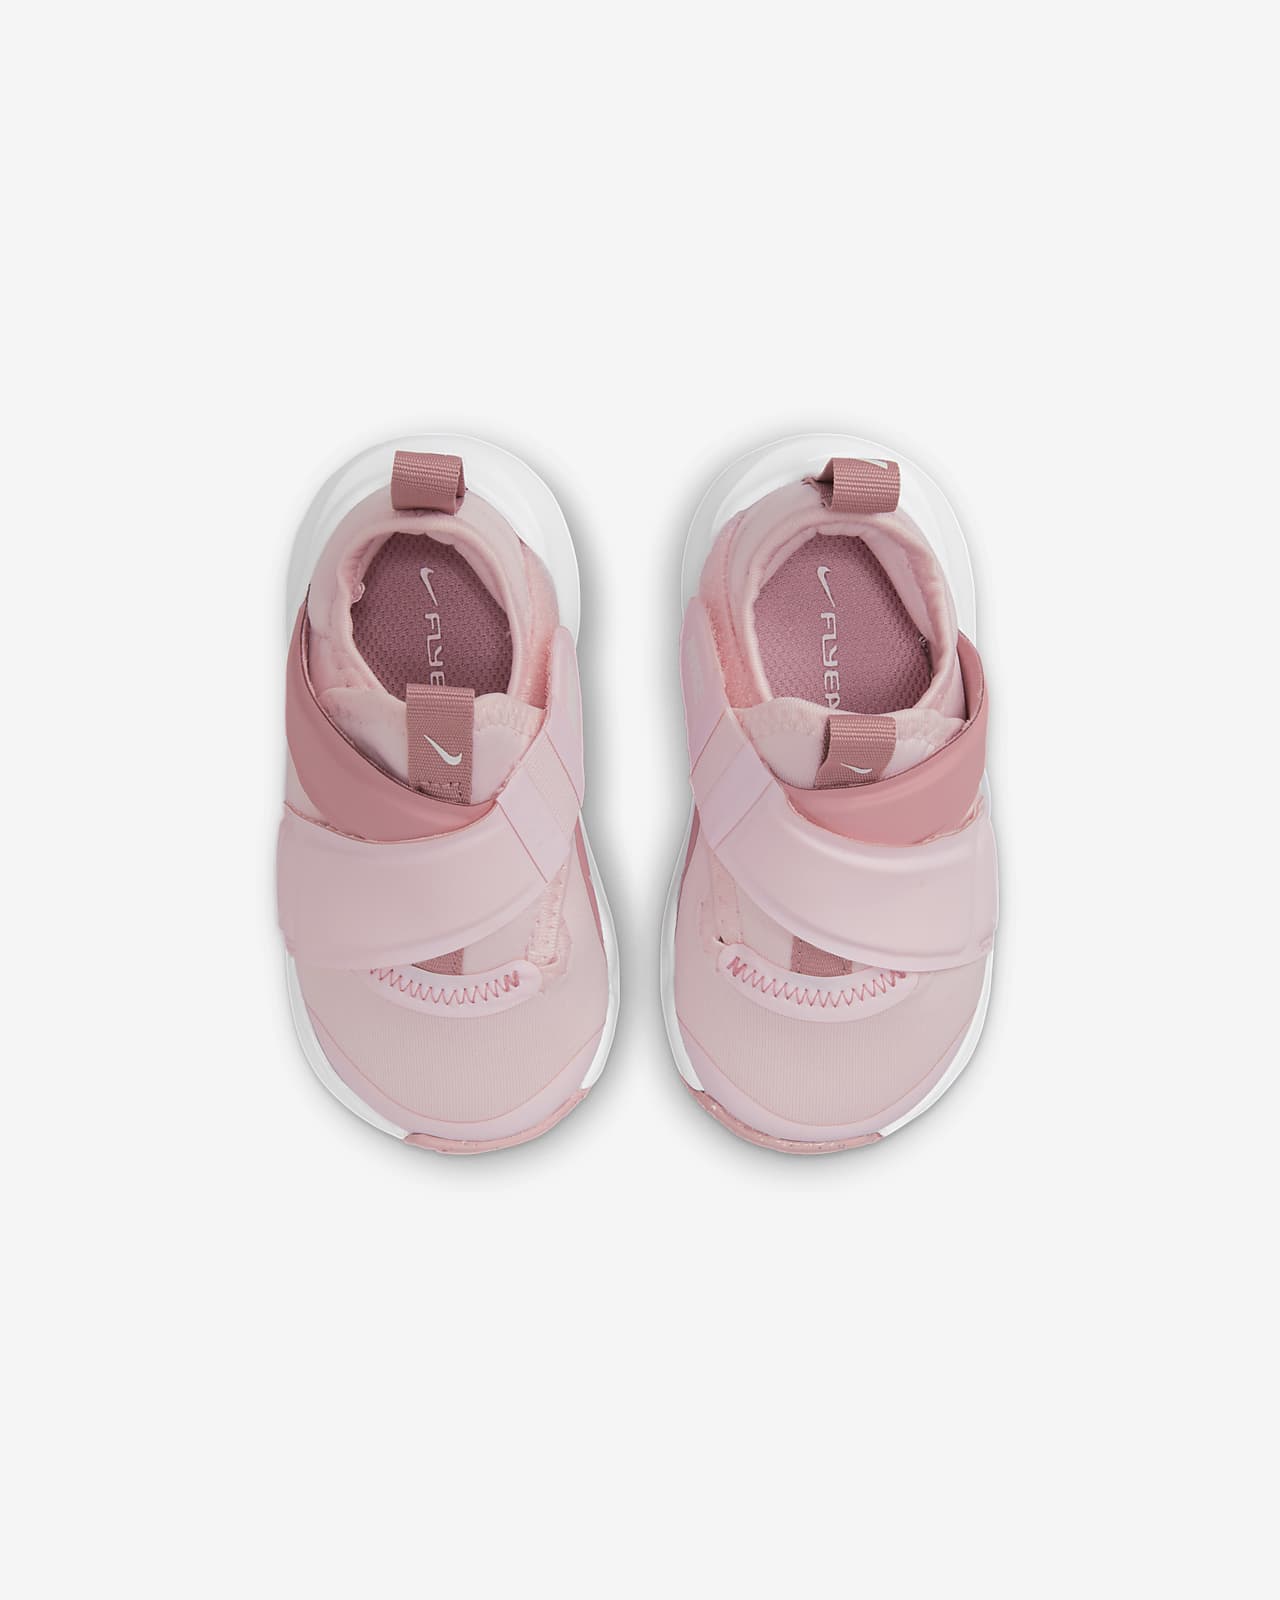 Veronderstelling persoon Of Nike Flex Advance Schoenen voor baby's/peuters. Nike BE